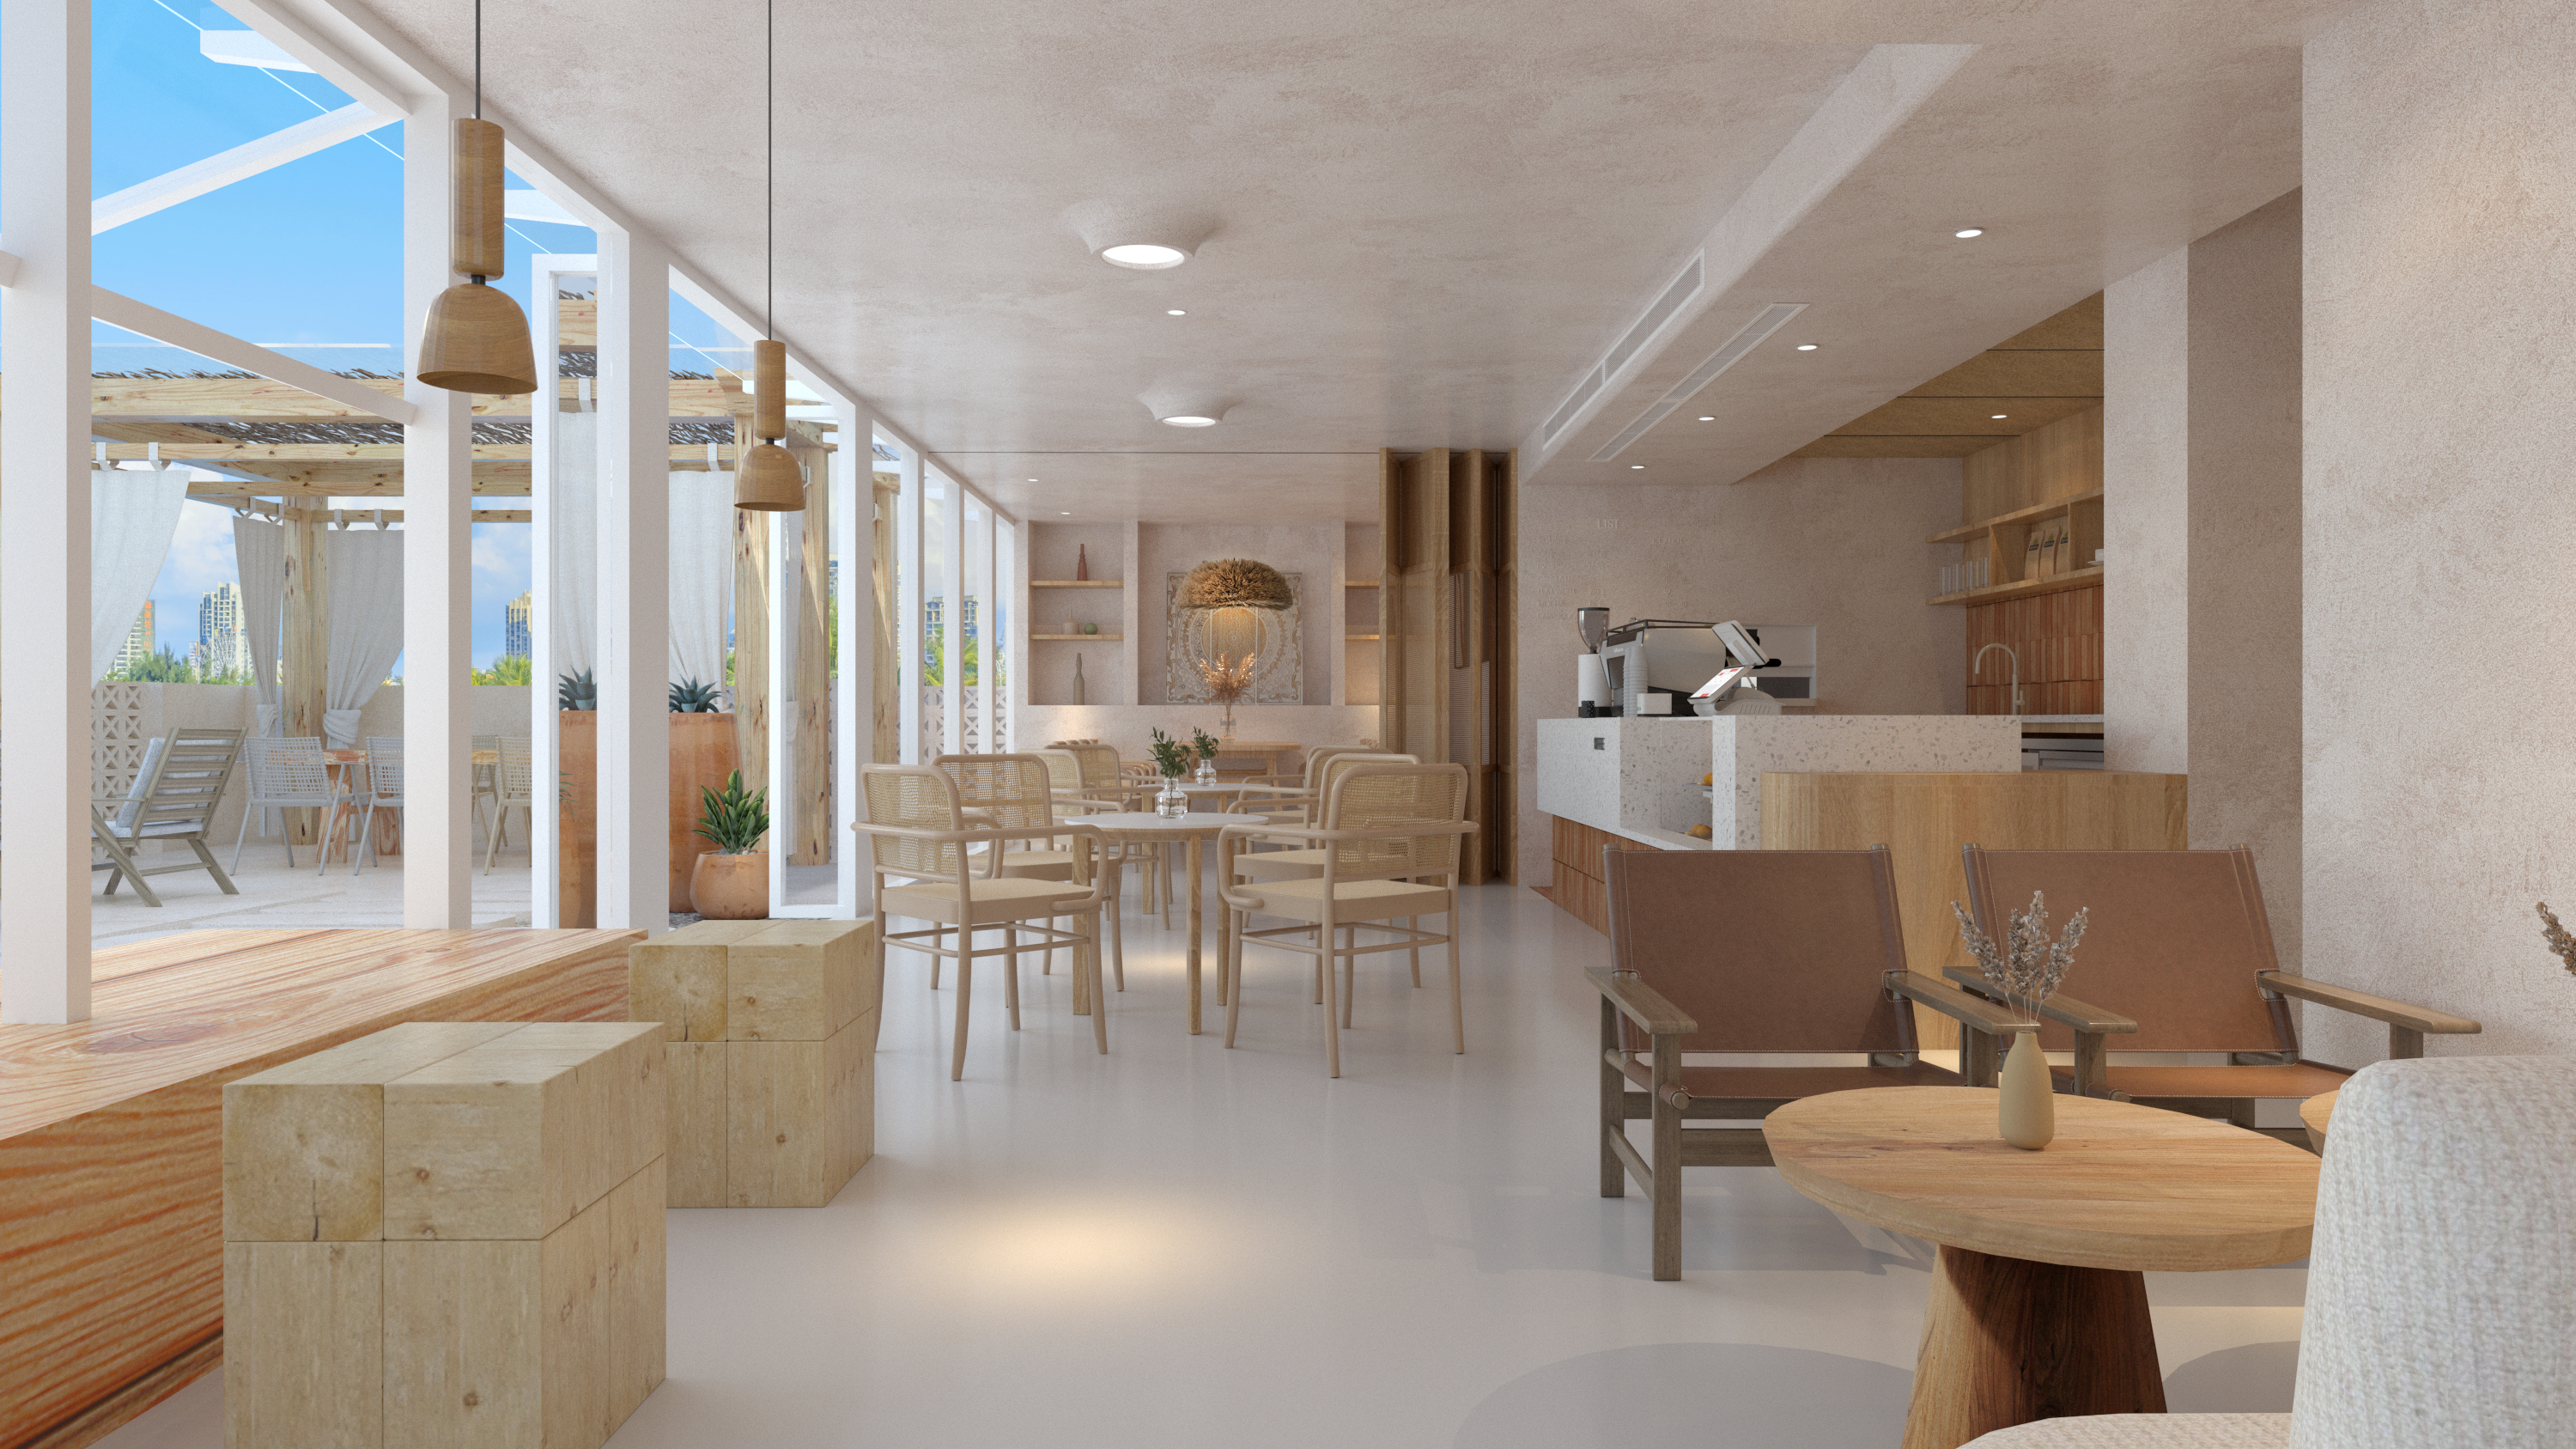 餐饮空间3装修效果图摩洛哥风情咖啡烘焙馆设计图片赏析